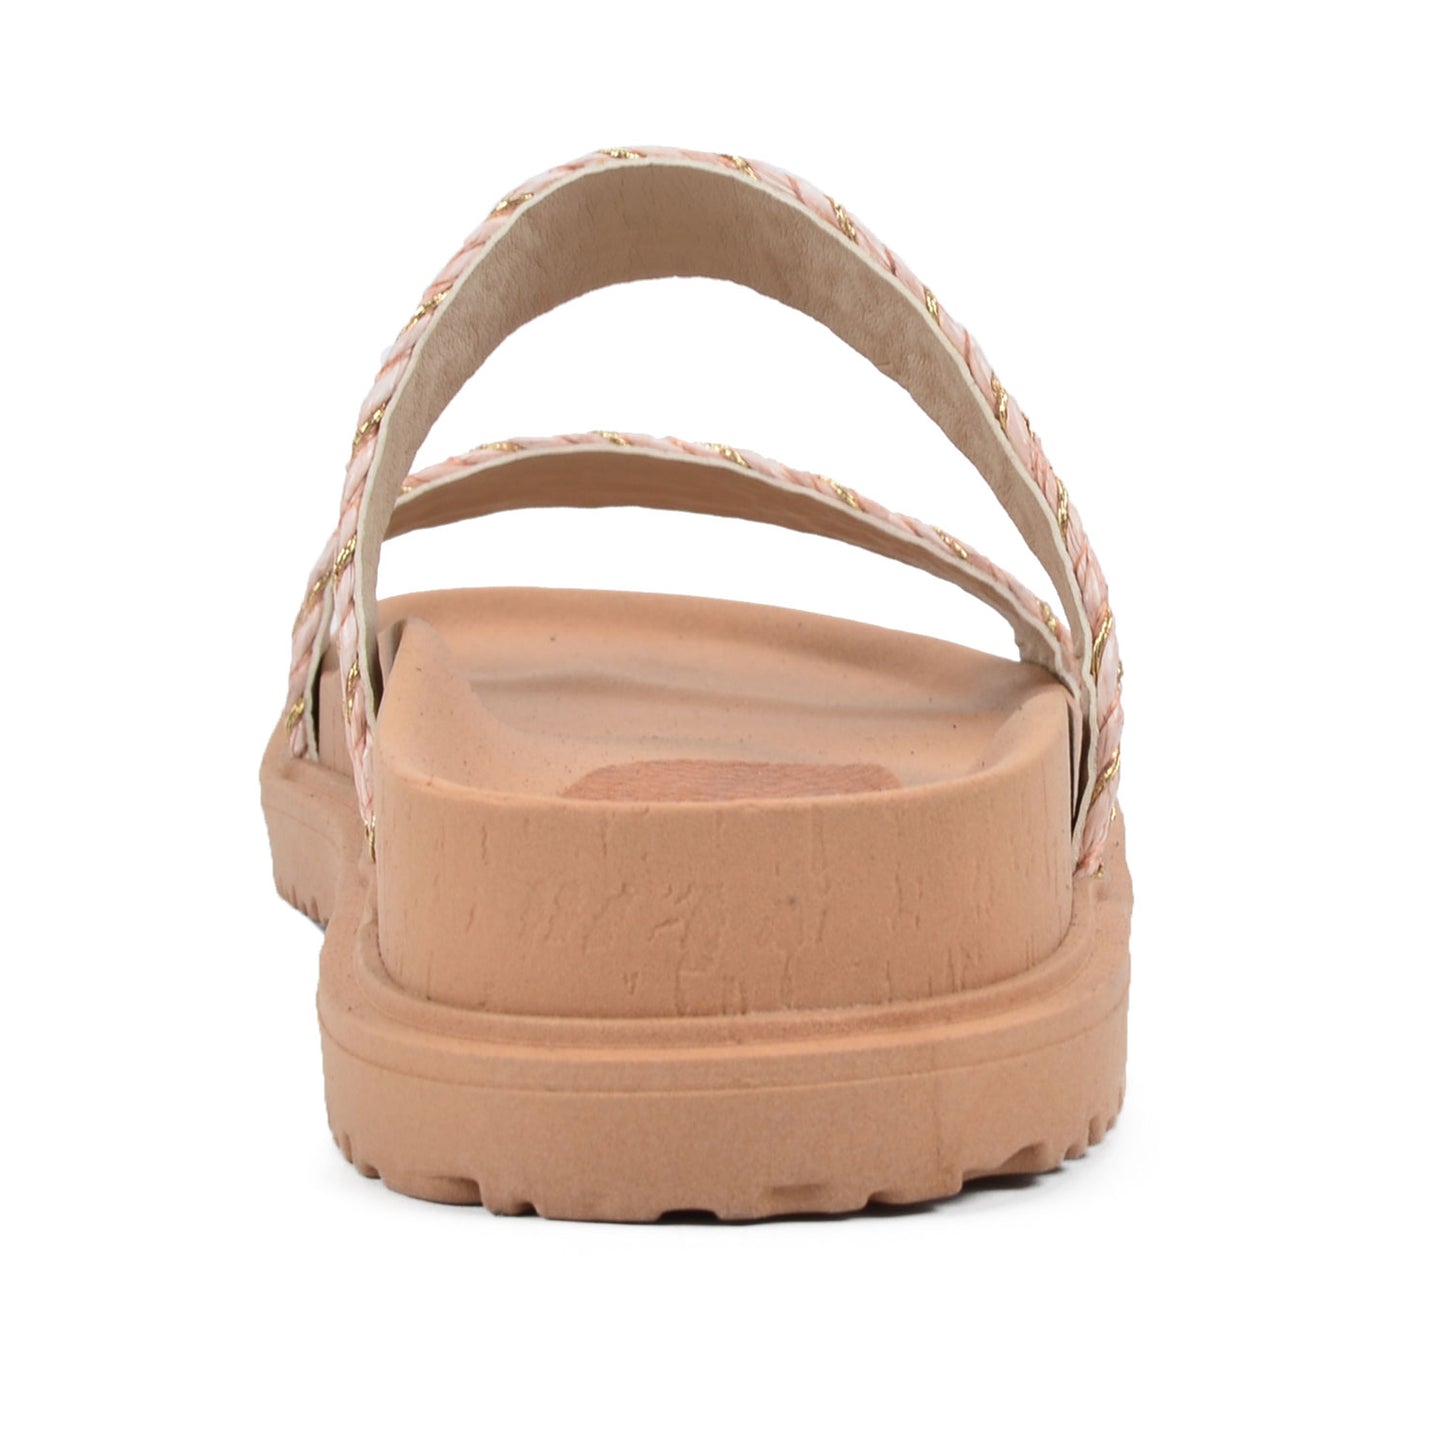 Japon Pink | Raffia Slide Flat Sandals